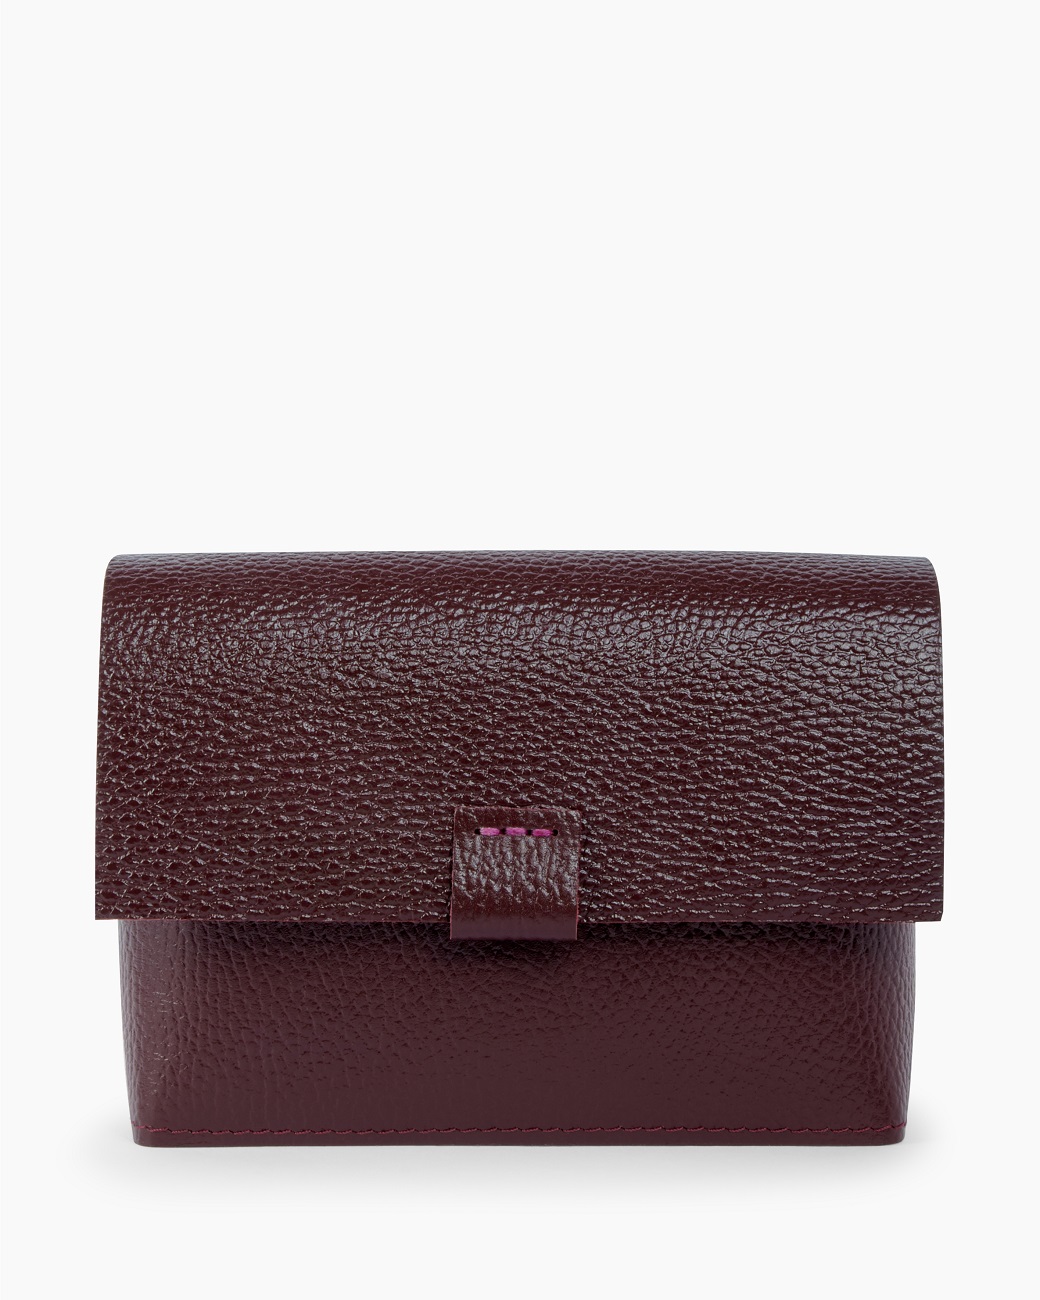 Женская поясная сумка из натуральной кожи бордовая A004 burgundy grain